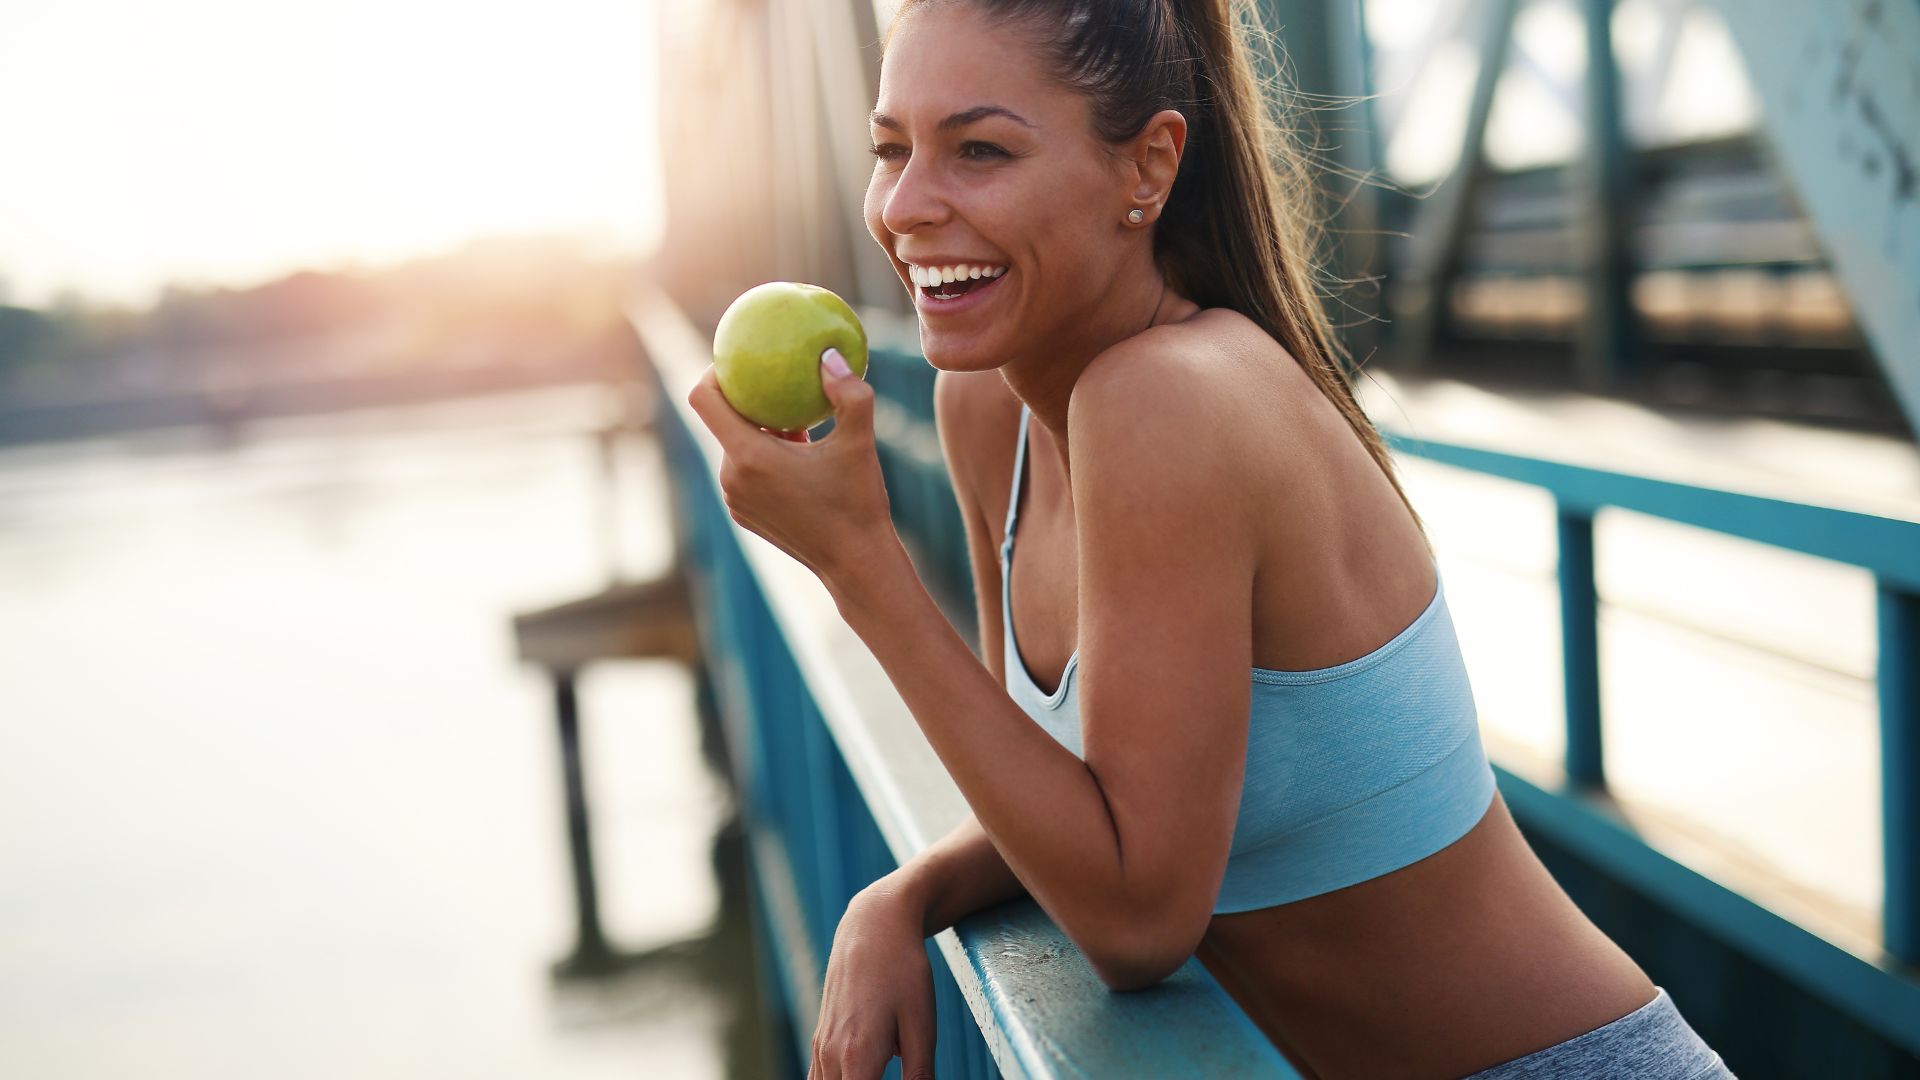 Kobieta, która prowadzi zdrowy styl życia, je jabłko w przerwie podczas biegania.